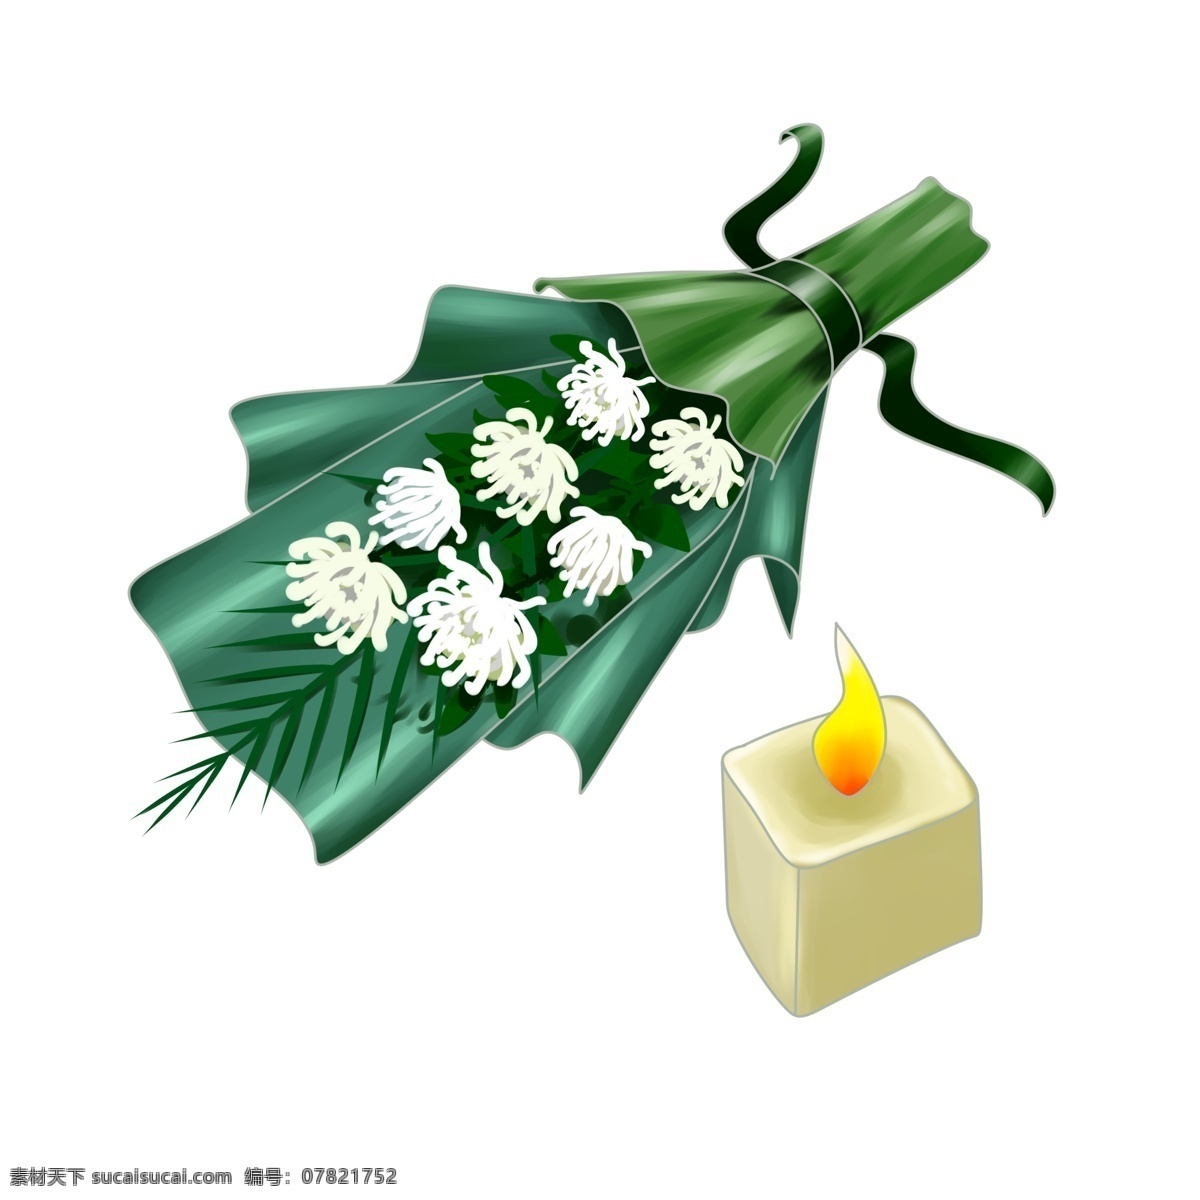 清明节 祭祀 花束 插画 白色的花朵 白色的蜡烛 绿色的叶子 卡通的插画 清明节插画 清明节祭祖